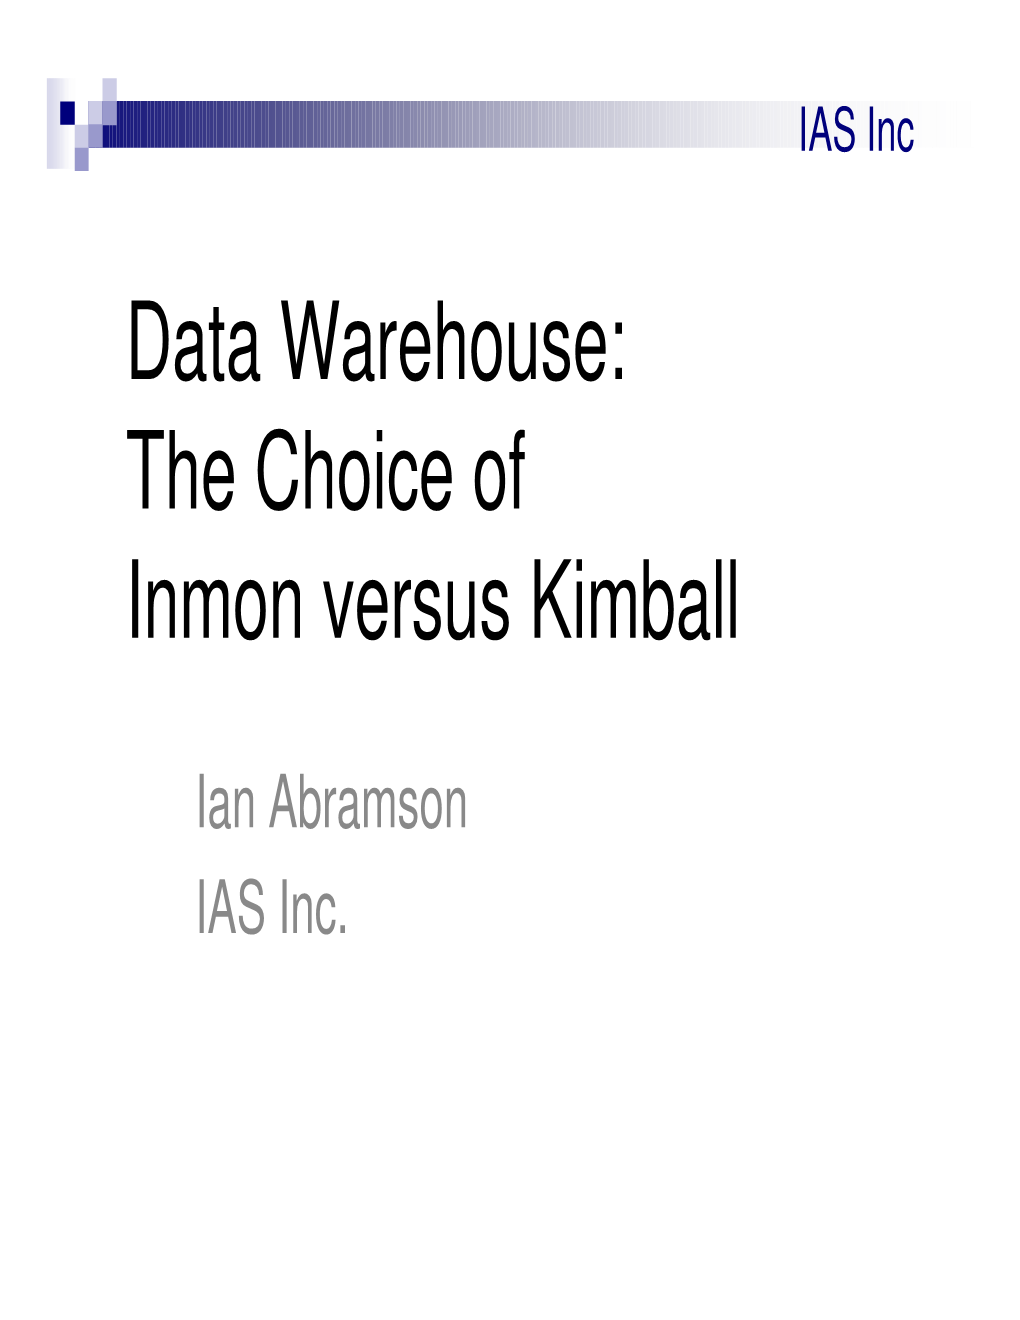 Data Warehouse: the Choice of Inmon Versus Kimball